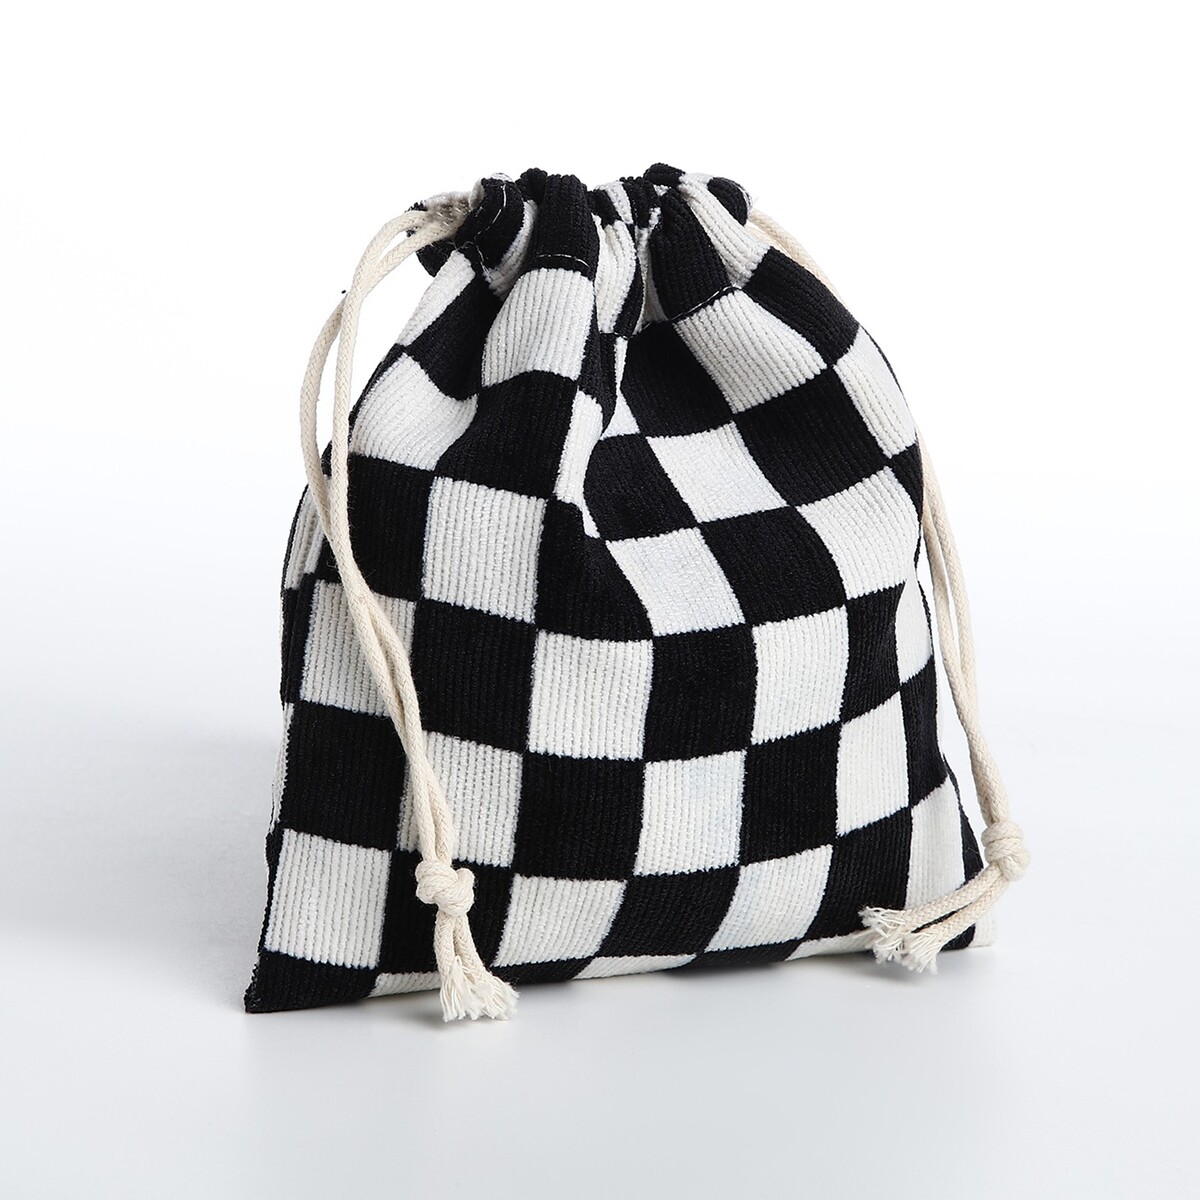 Косметичка - мешок с завязками, цвет белый/черный